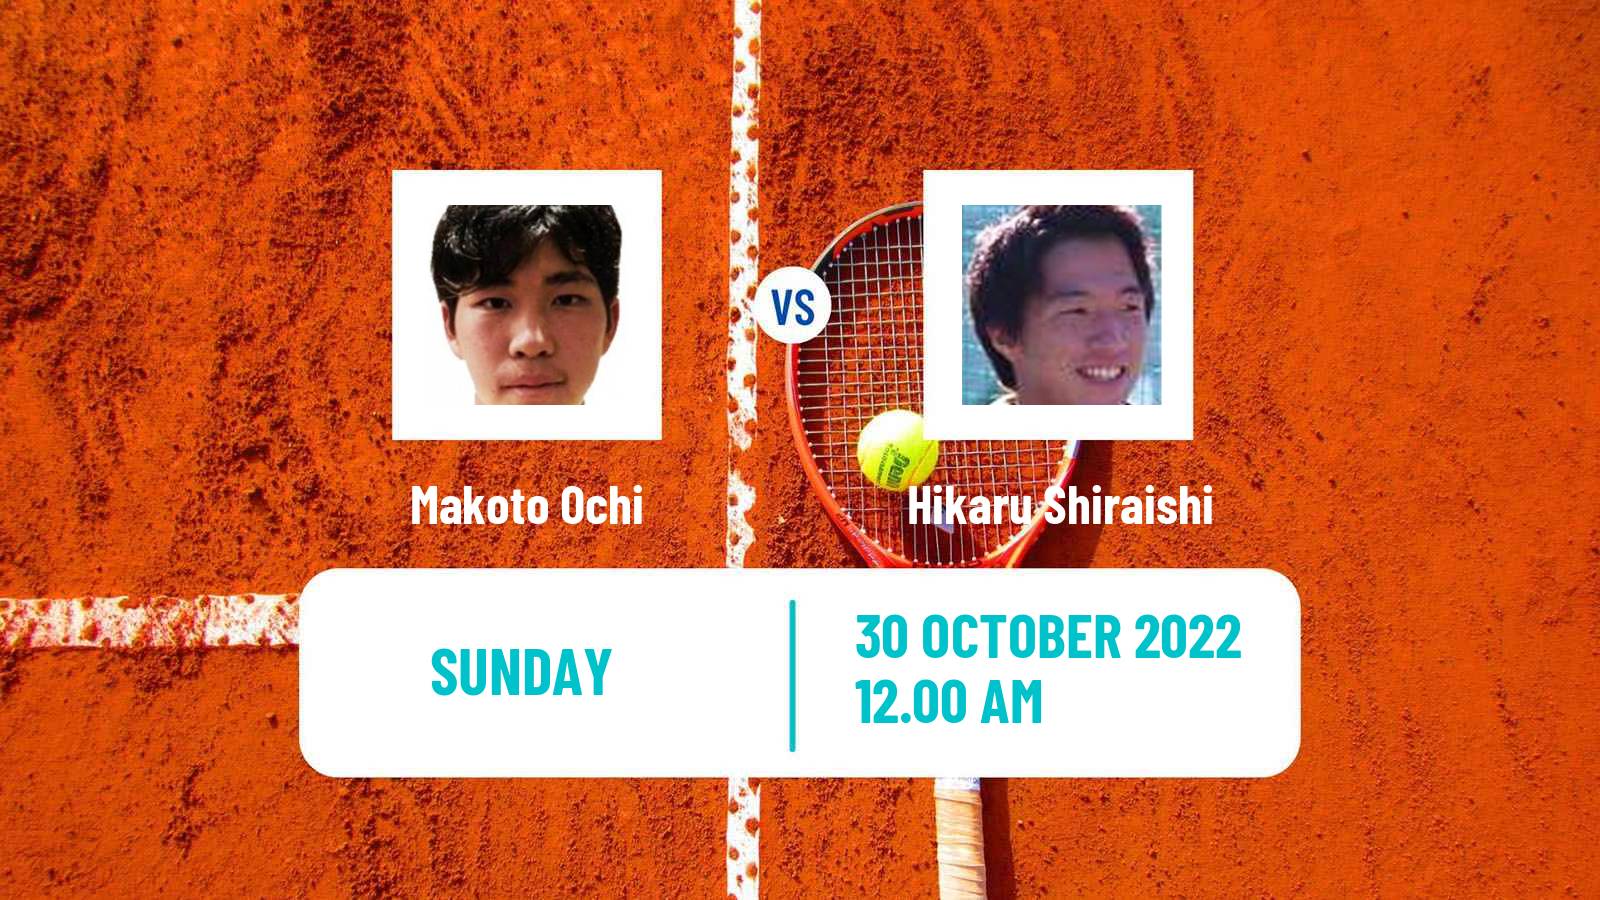 Tennis ATP Challenger Makoto Ochi - Hikaru Shiraishi